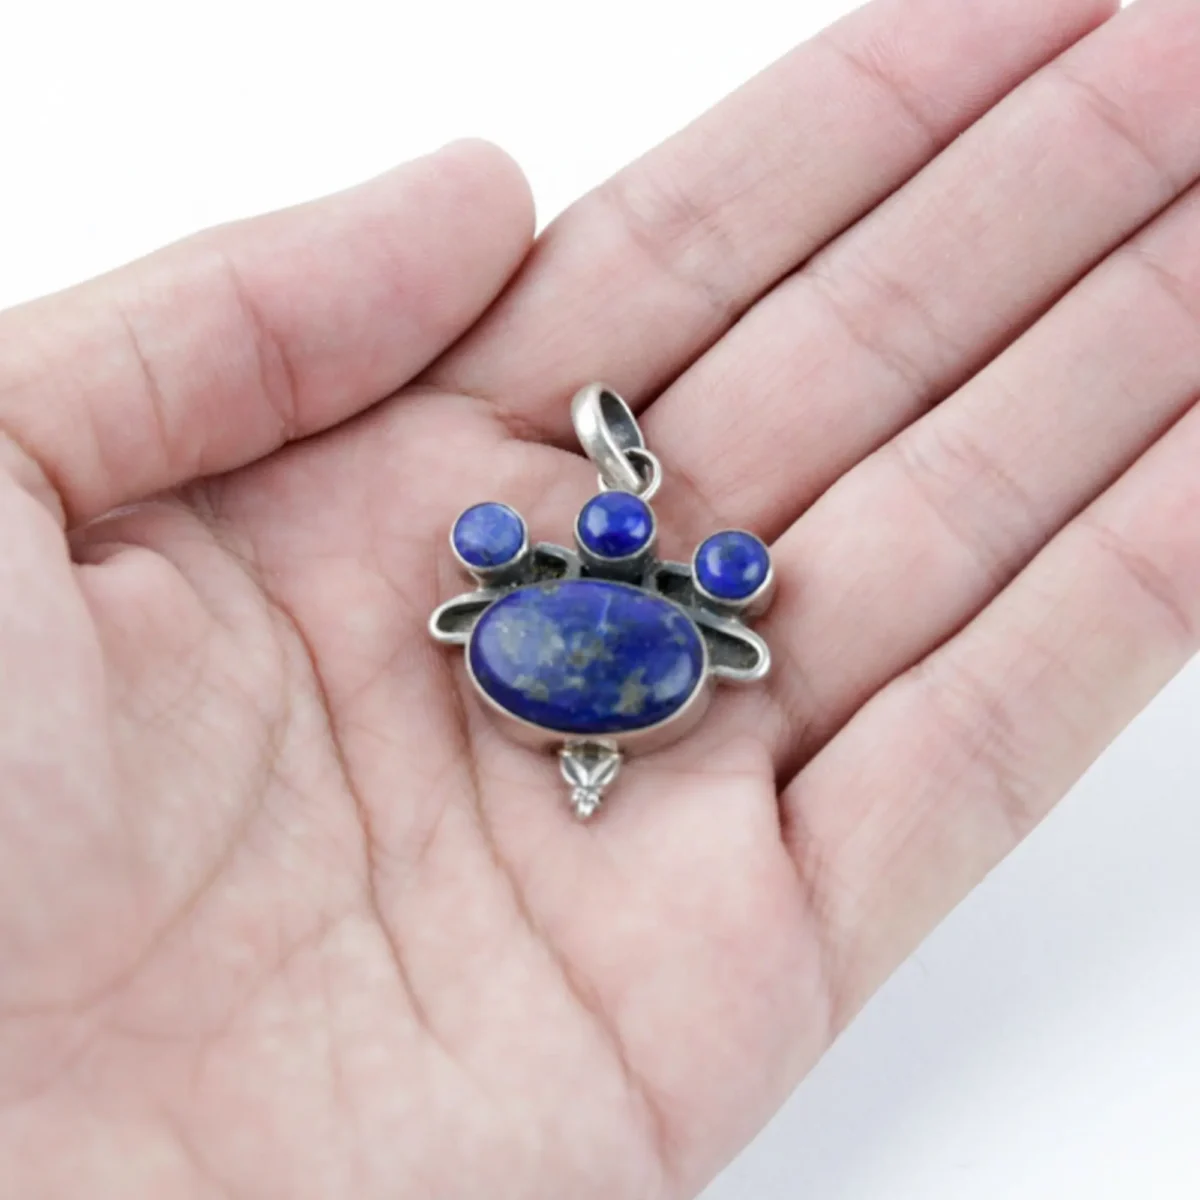 Genuine-Lapis-Lazuli-Pendant